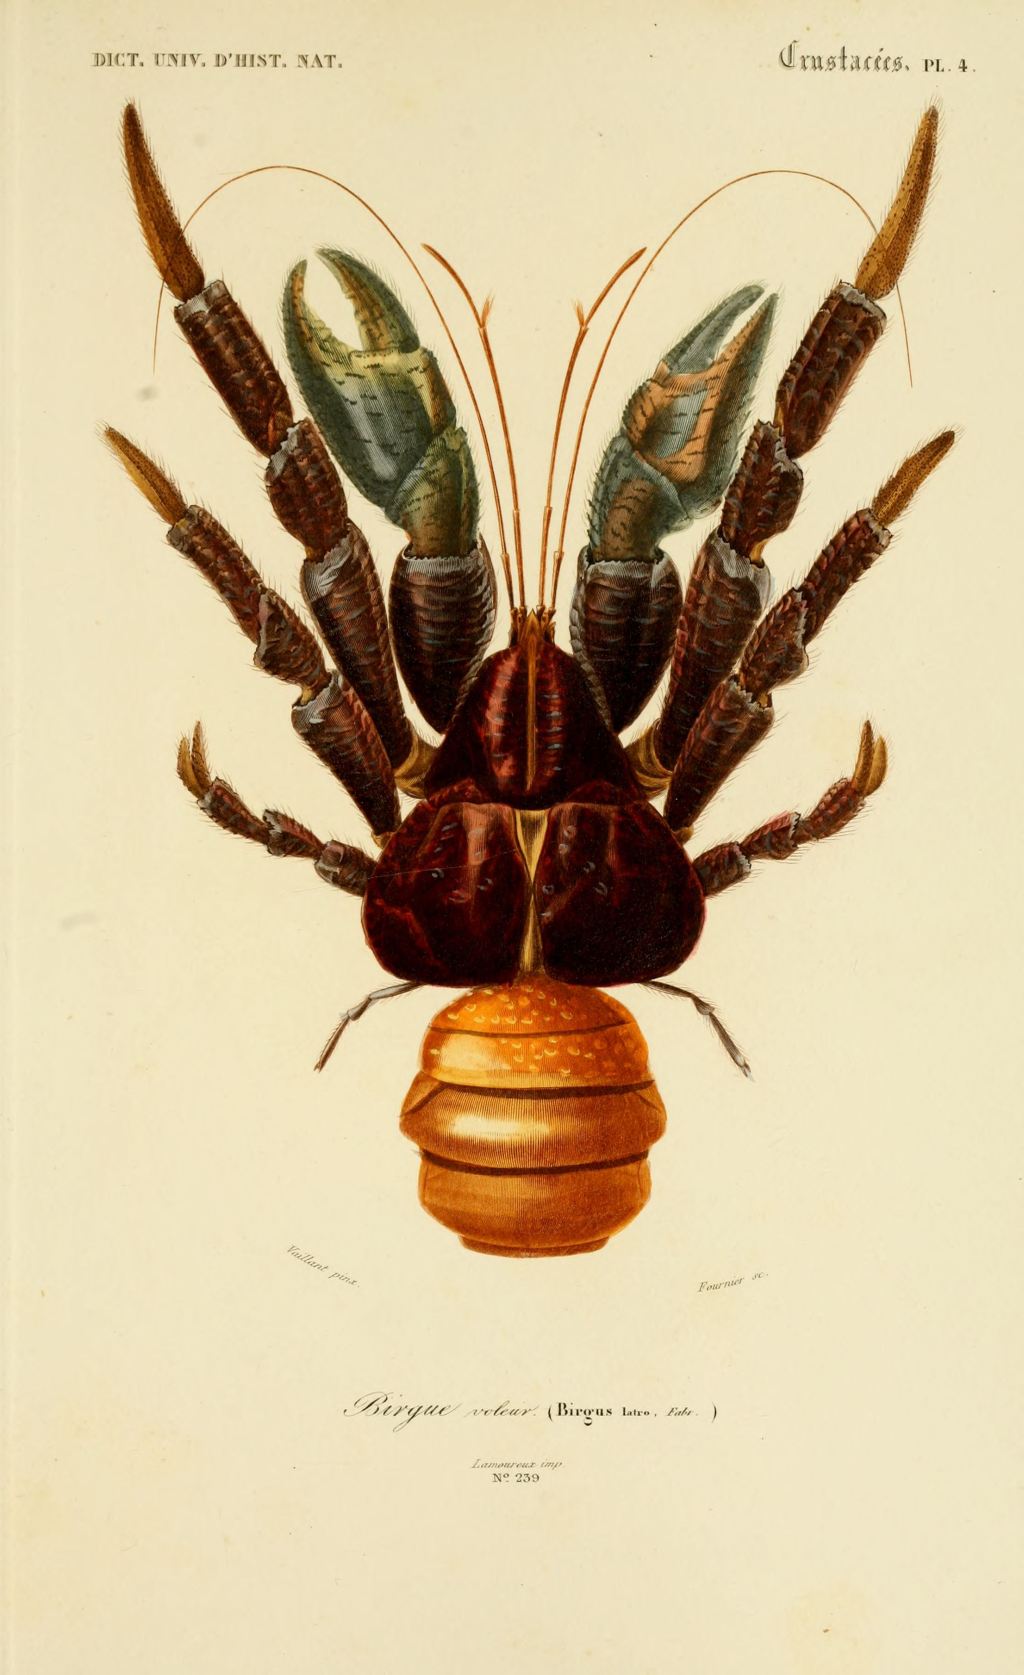 Print of a coconut crab.